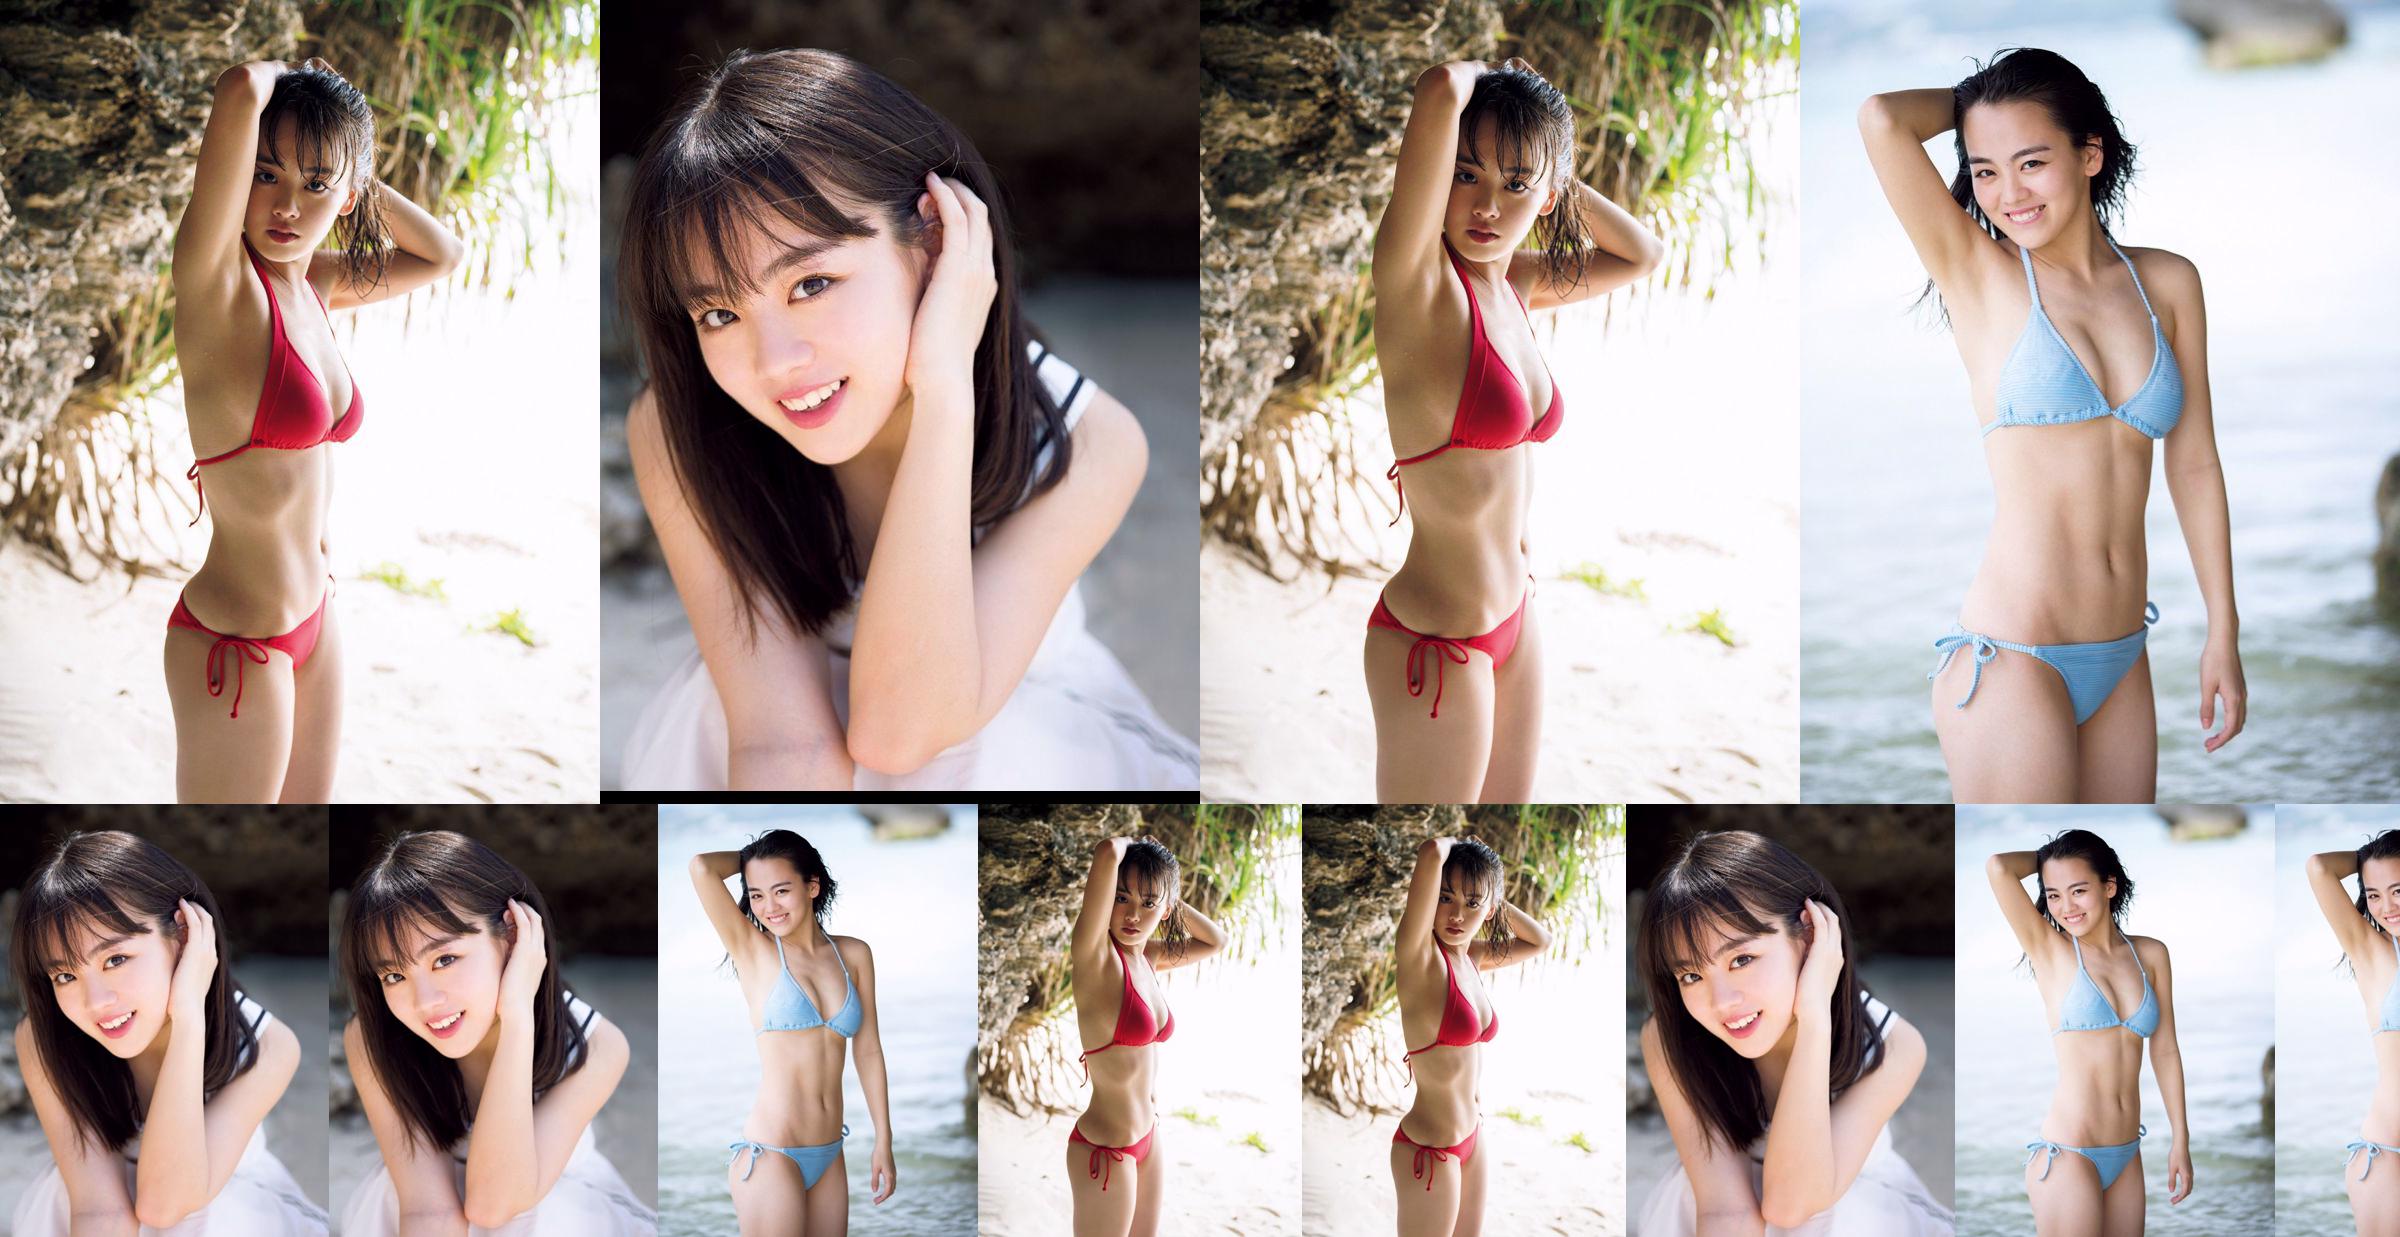 [วันศุกร์] Rikka Ihara << อดีตกัปตันชมรมเต้น Tomioka High School เปิดตัวในชุดบิกินี่ >> รูปภาพ No.429f80 หน้า 1